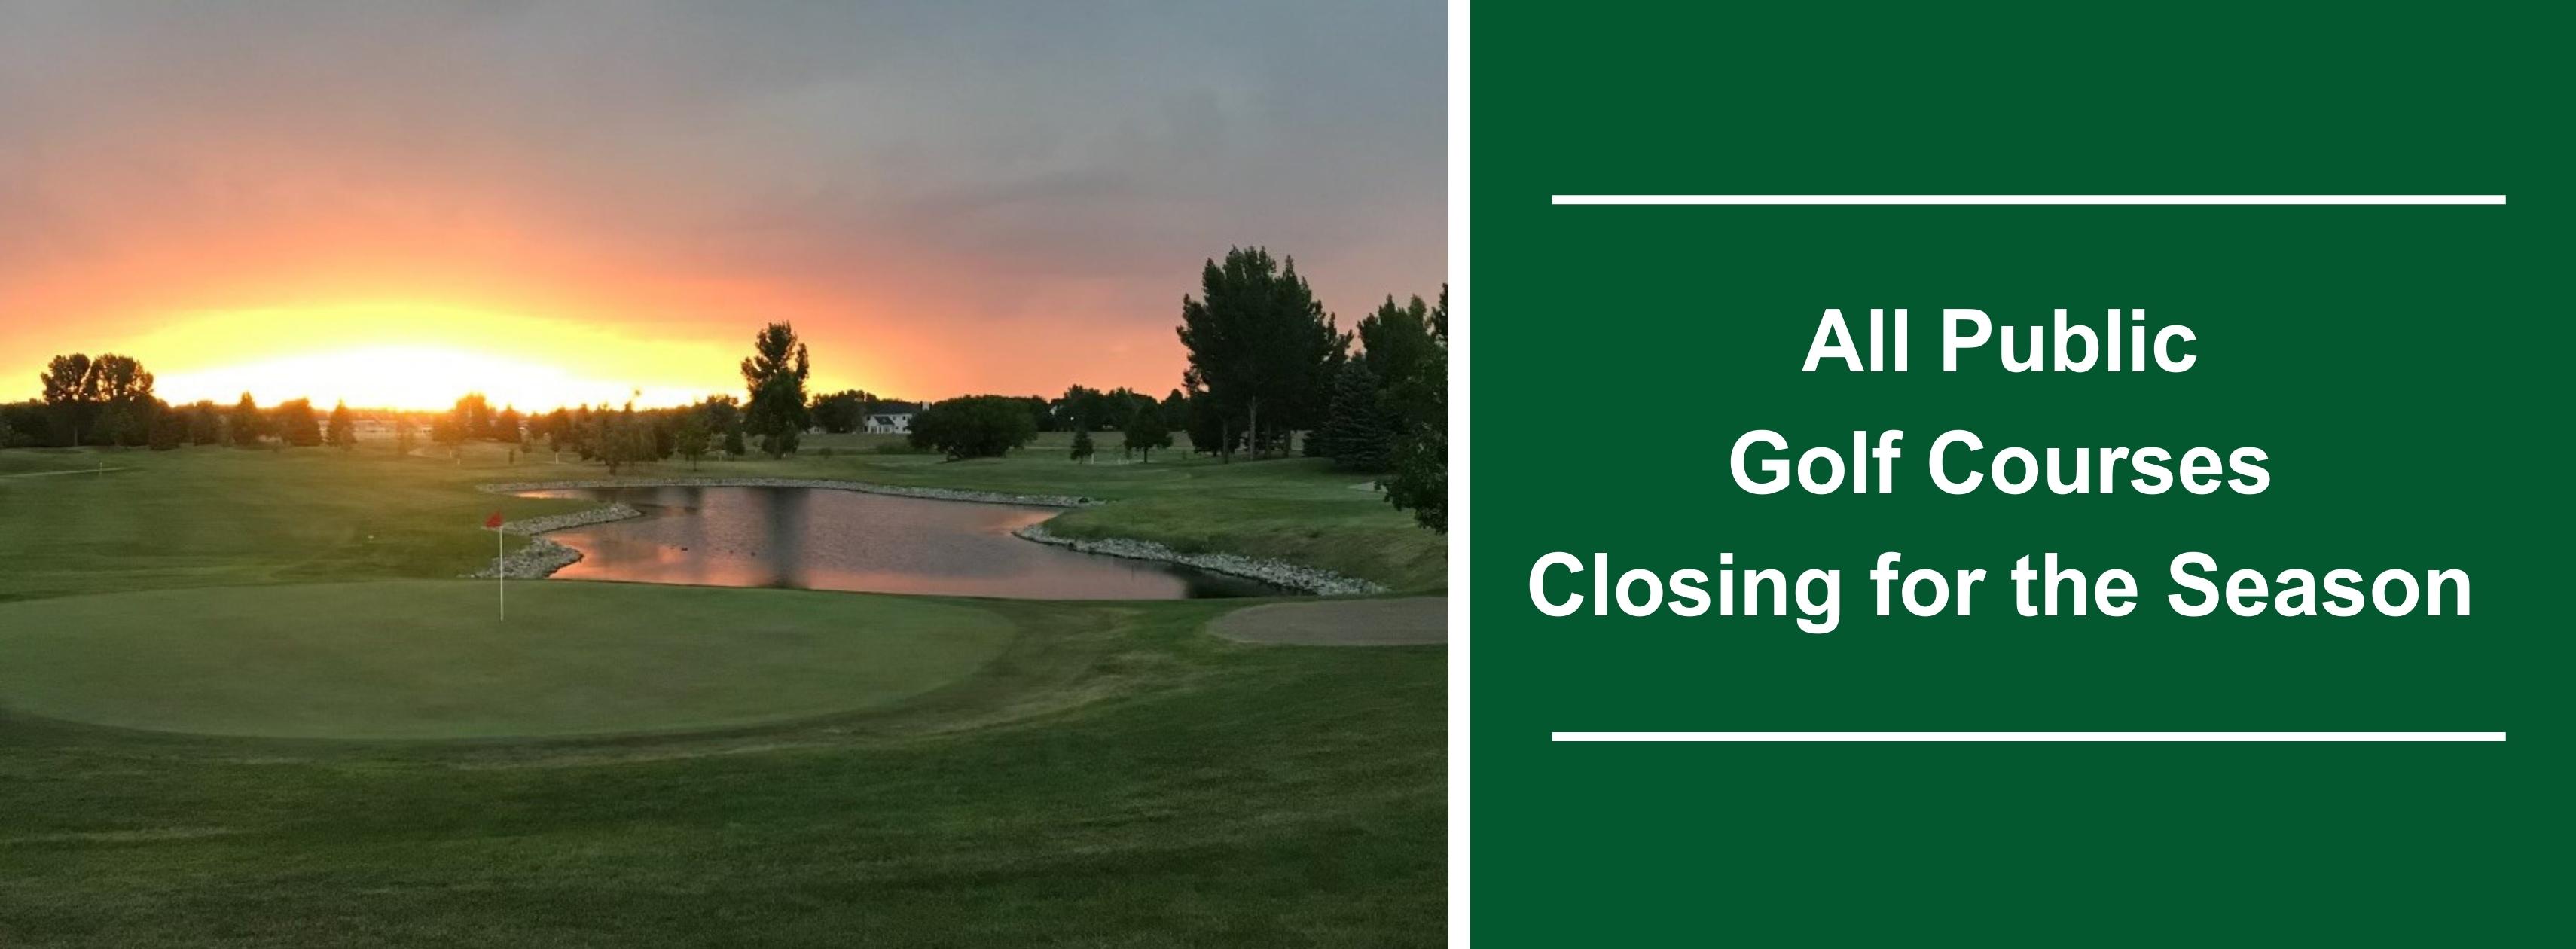 When Do Golf Courses Close For The Season?  